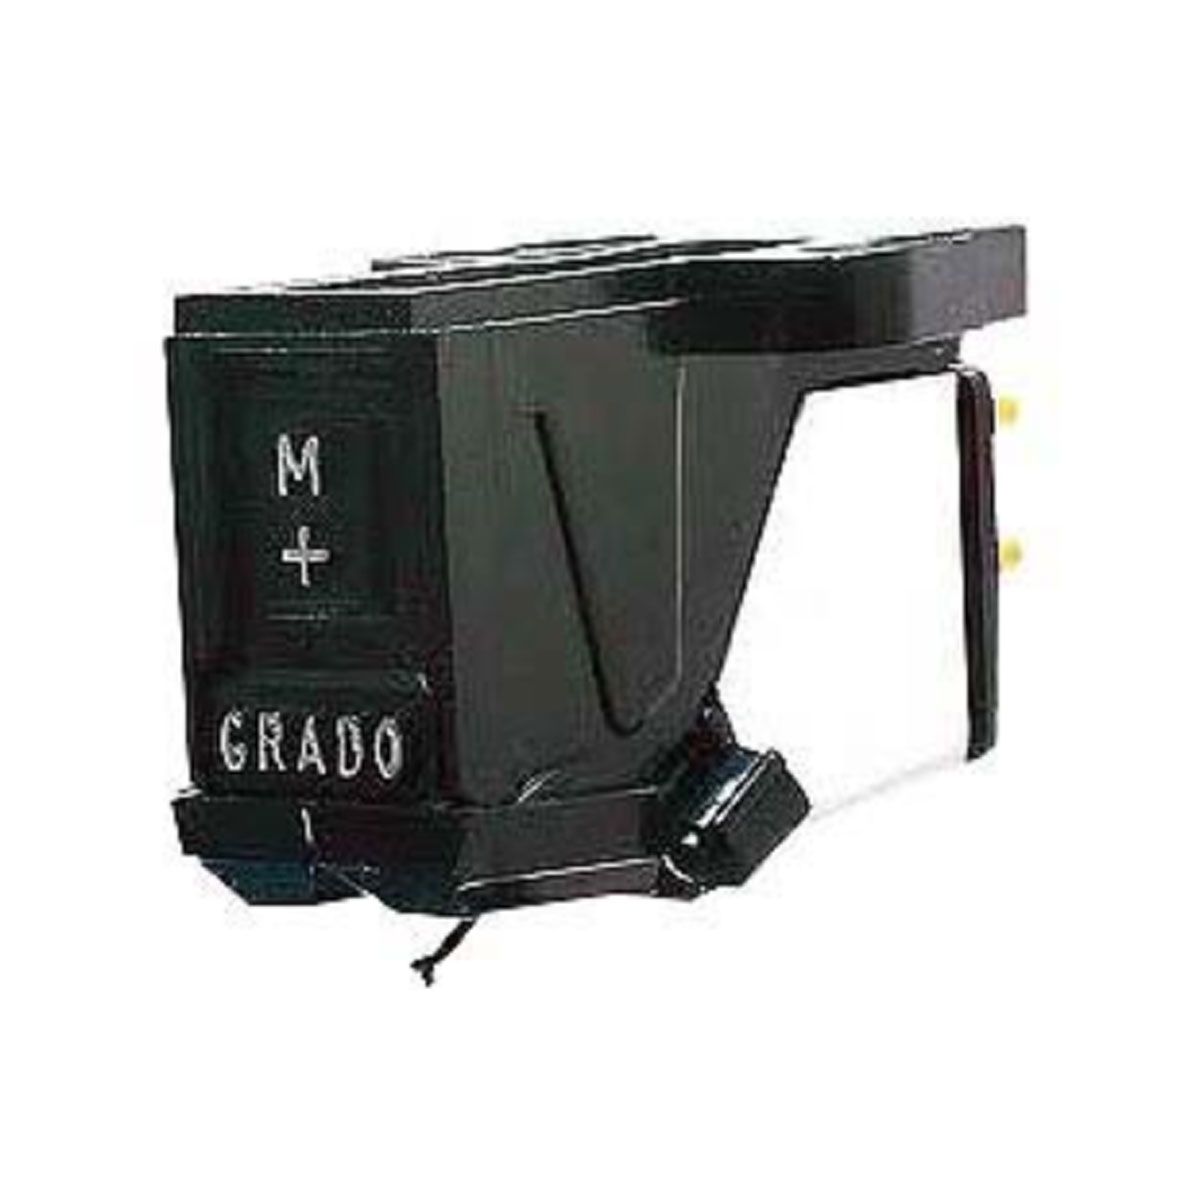 Grado Prestige Mono Phono Cartridge Model ME+, front view